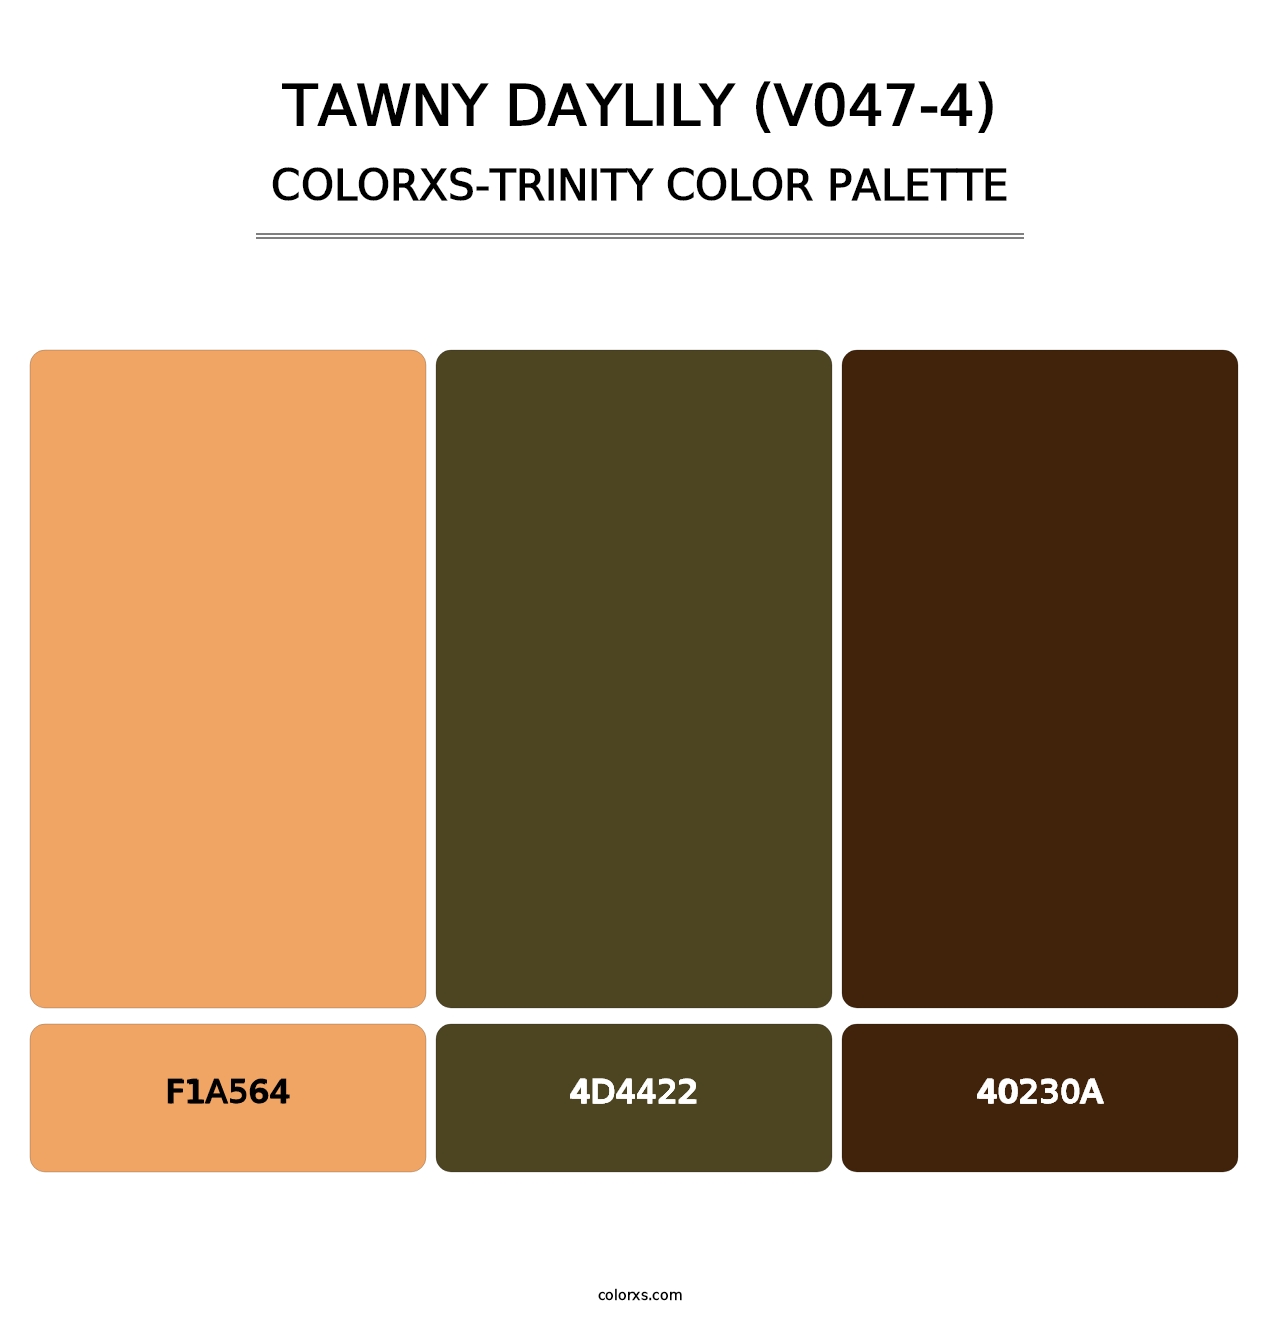 Tawny Daylily (V047-4) - Colorxs Trinity Palette